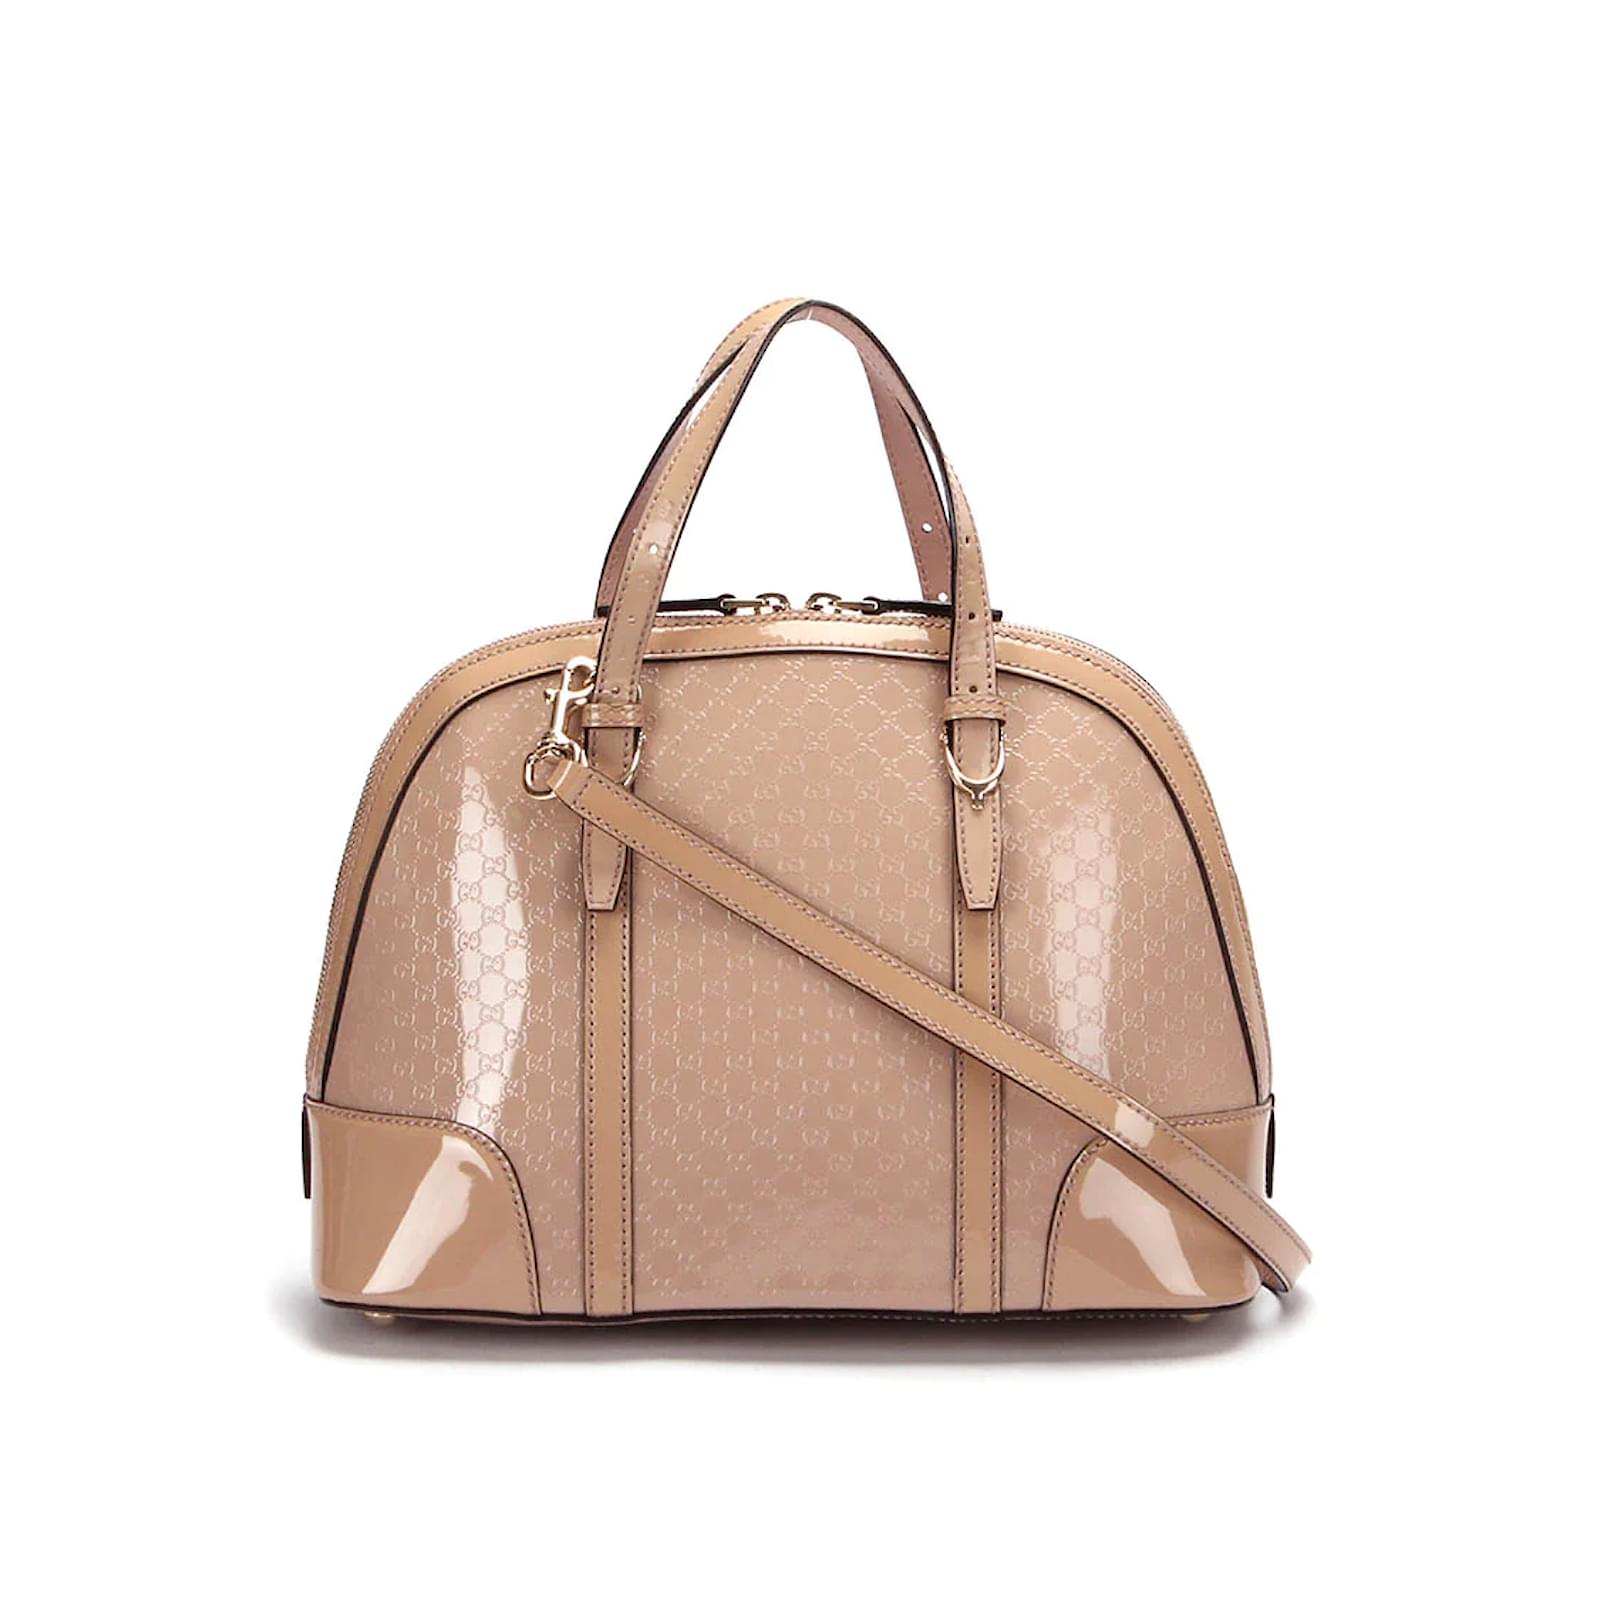 Gucci Mini Dome Micro Guccissima Leather Shoulder Bag Pink